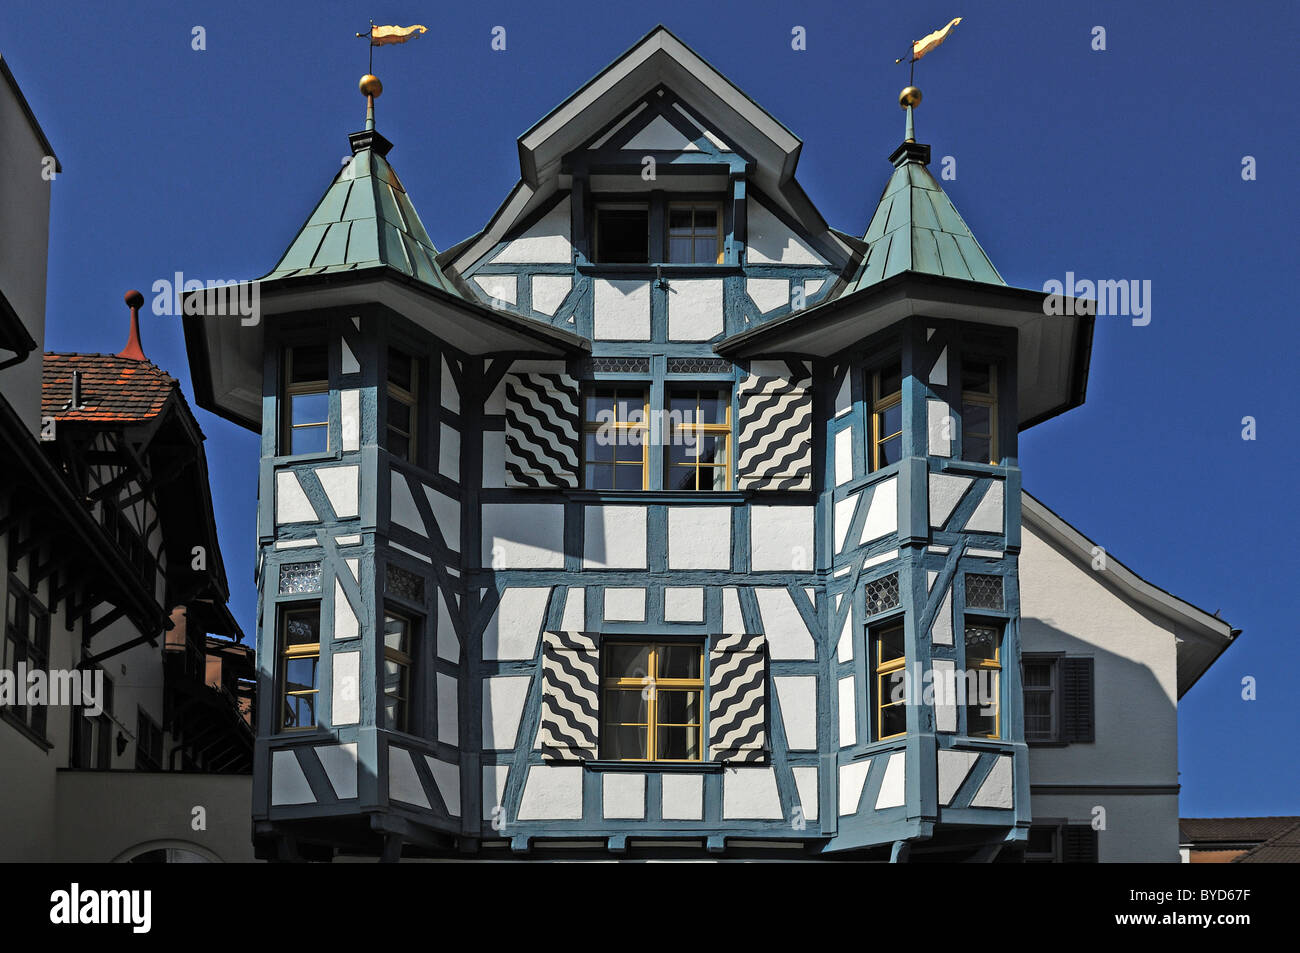 Maison à colombages ornée stopper, Gallusstrasse 20, Saint-Gall, Suisse, Europe Banque D'Images